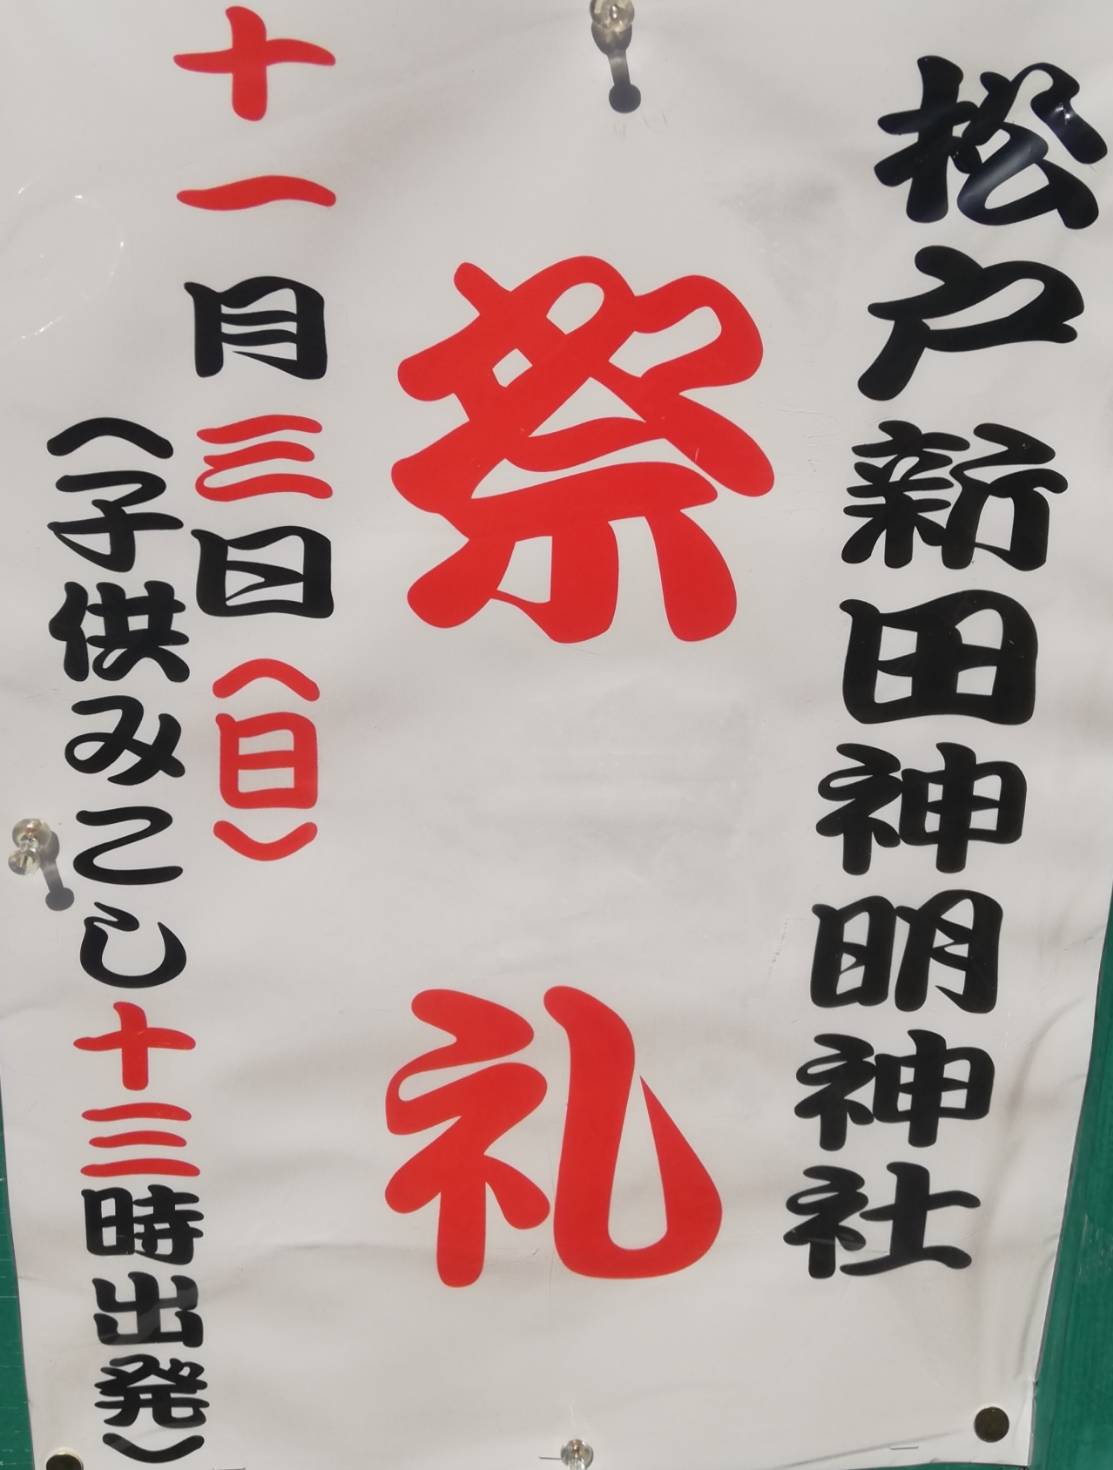 神明神社祭礼松戸新田